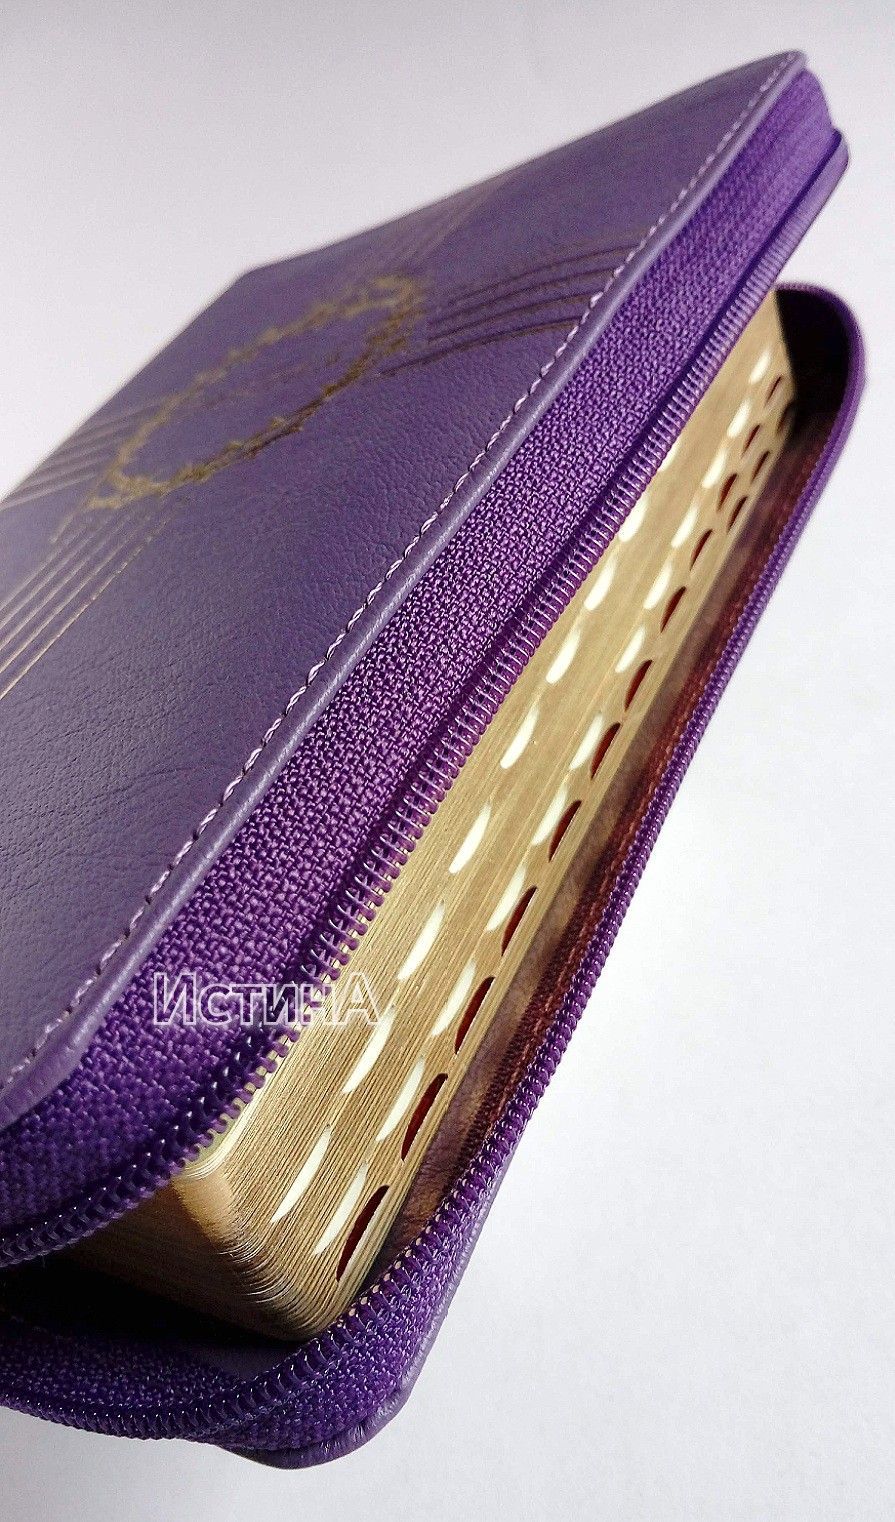 БИБЛИЯ 047zti кожаный переплет с молнией и индексами,  золотой крест и терновый венец, цвет фиолетовый,средний формат, 120*165 мм, код 1122